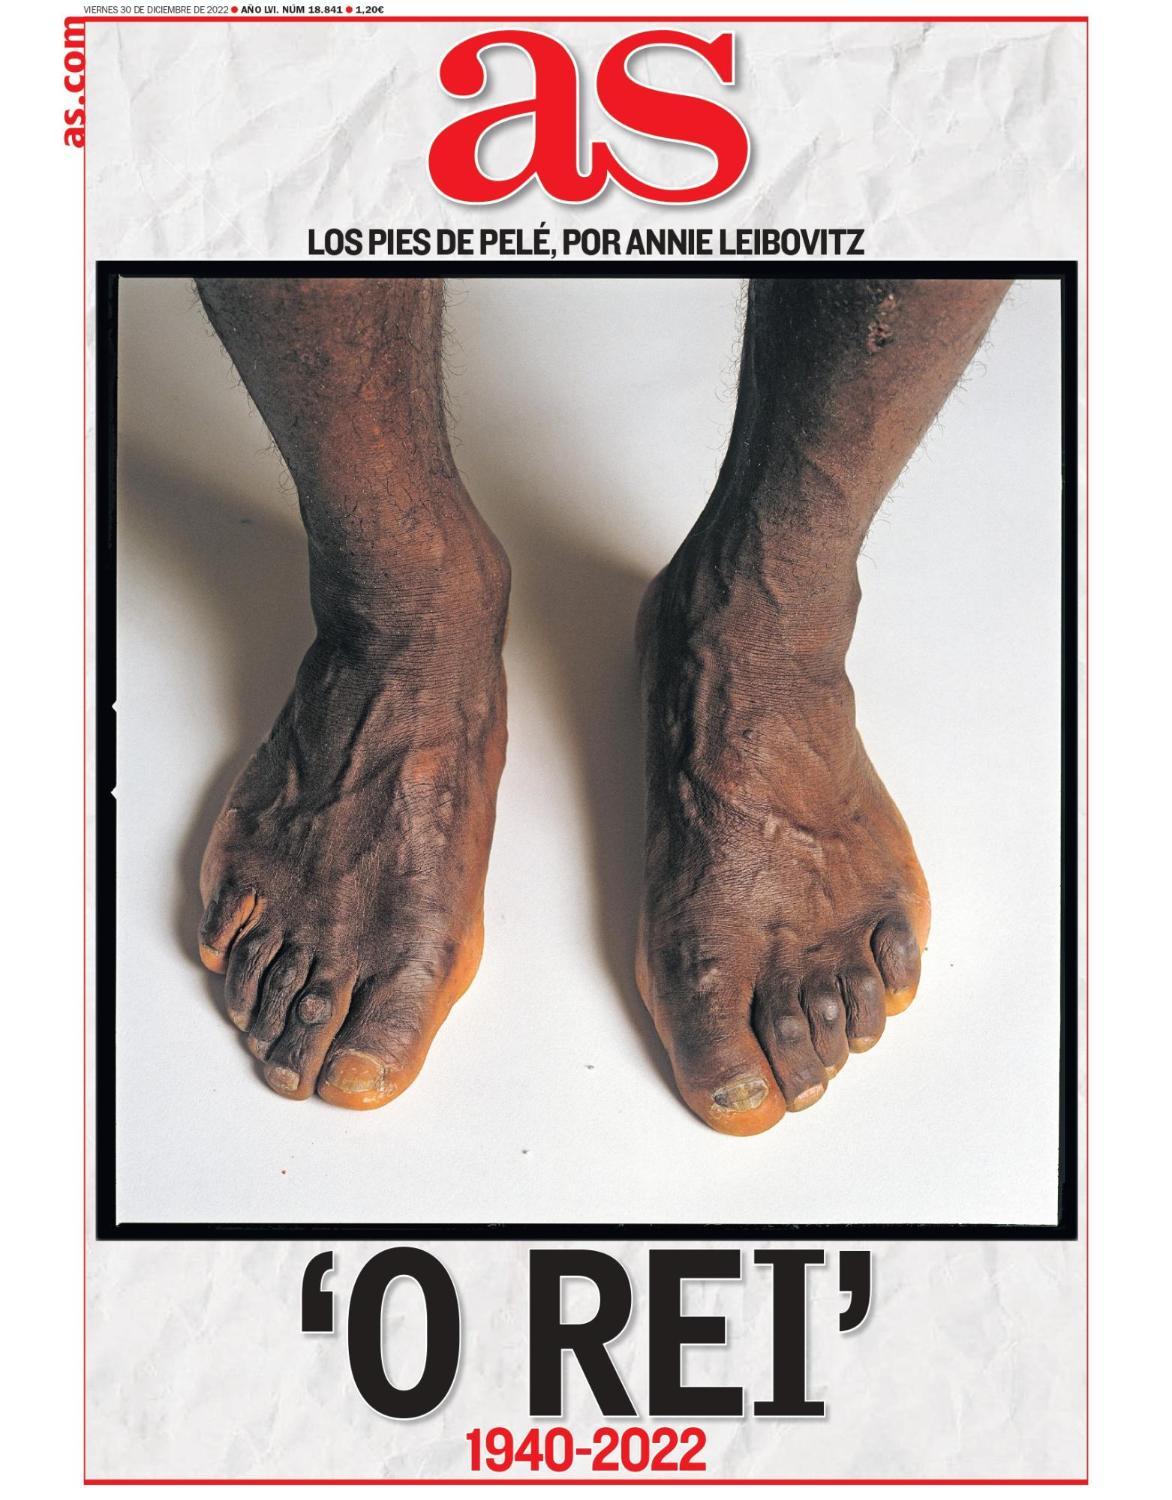 Imagem mostra os pés do Rei Pelé